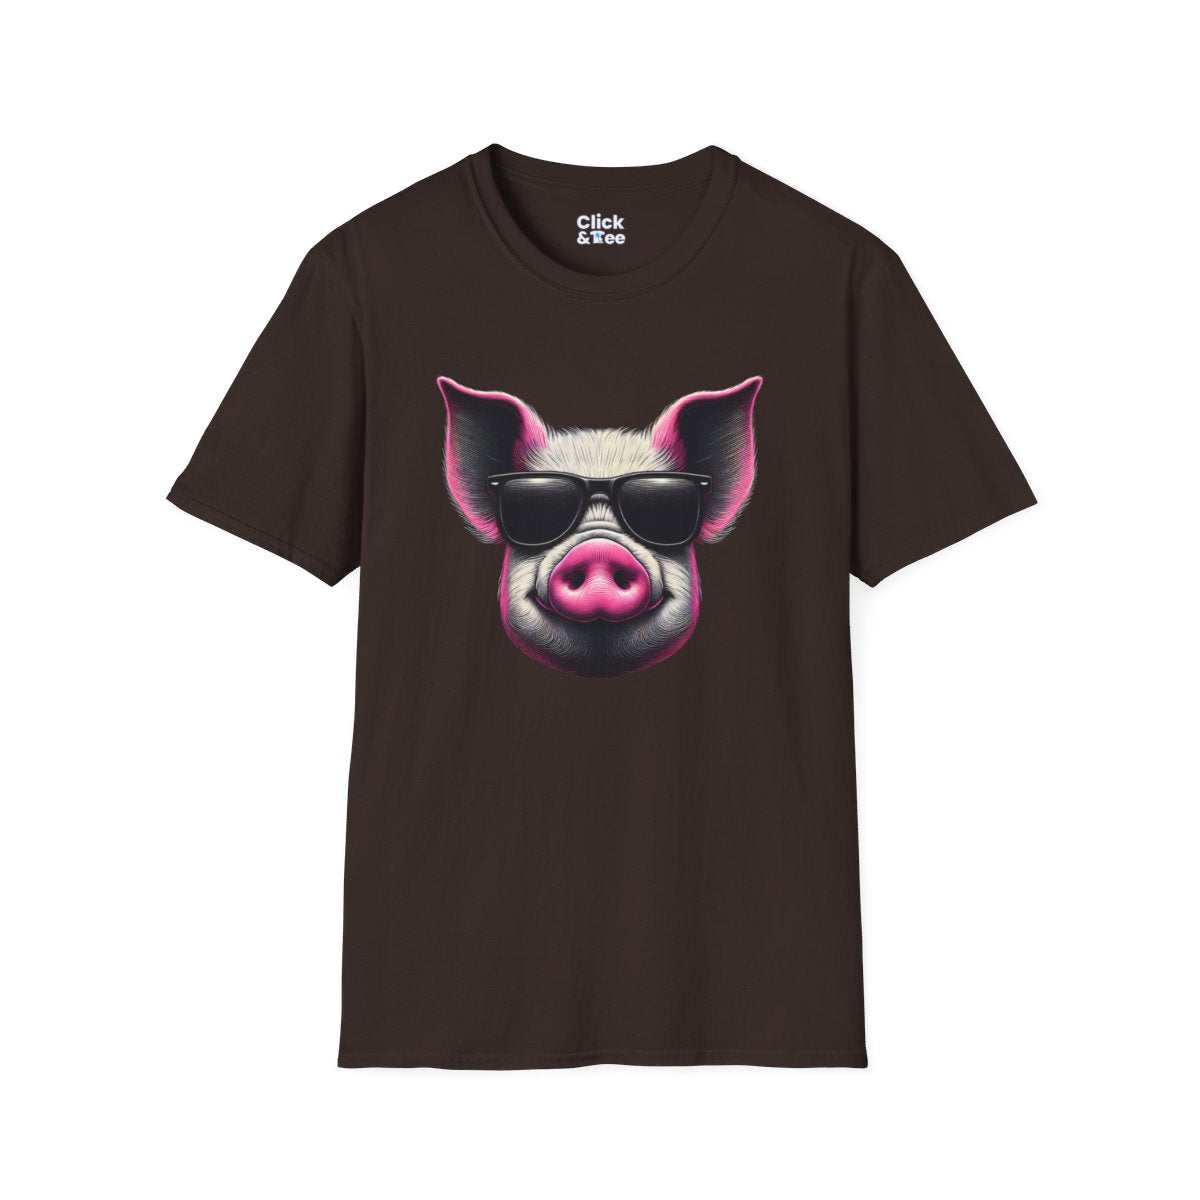 Graphic ArtPink Pig Face Unique T-Shirt Image 10